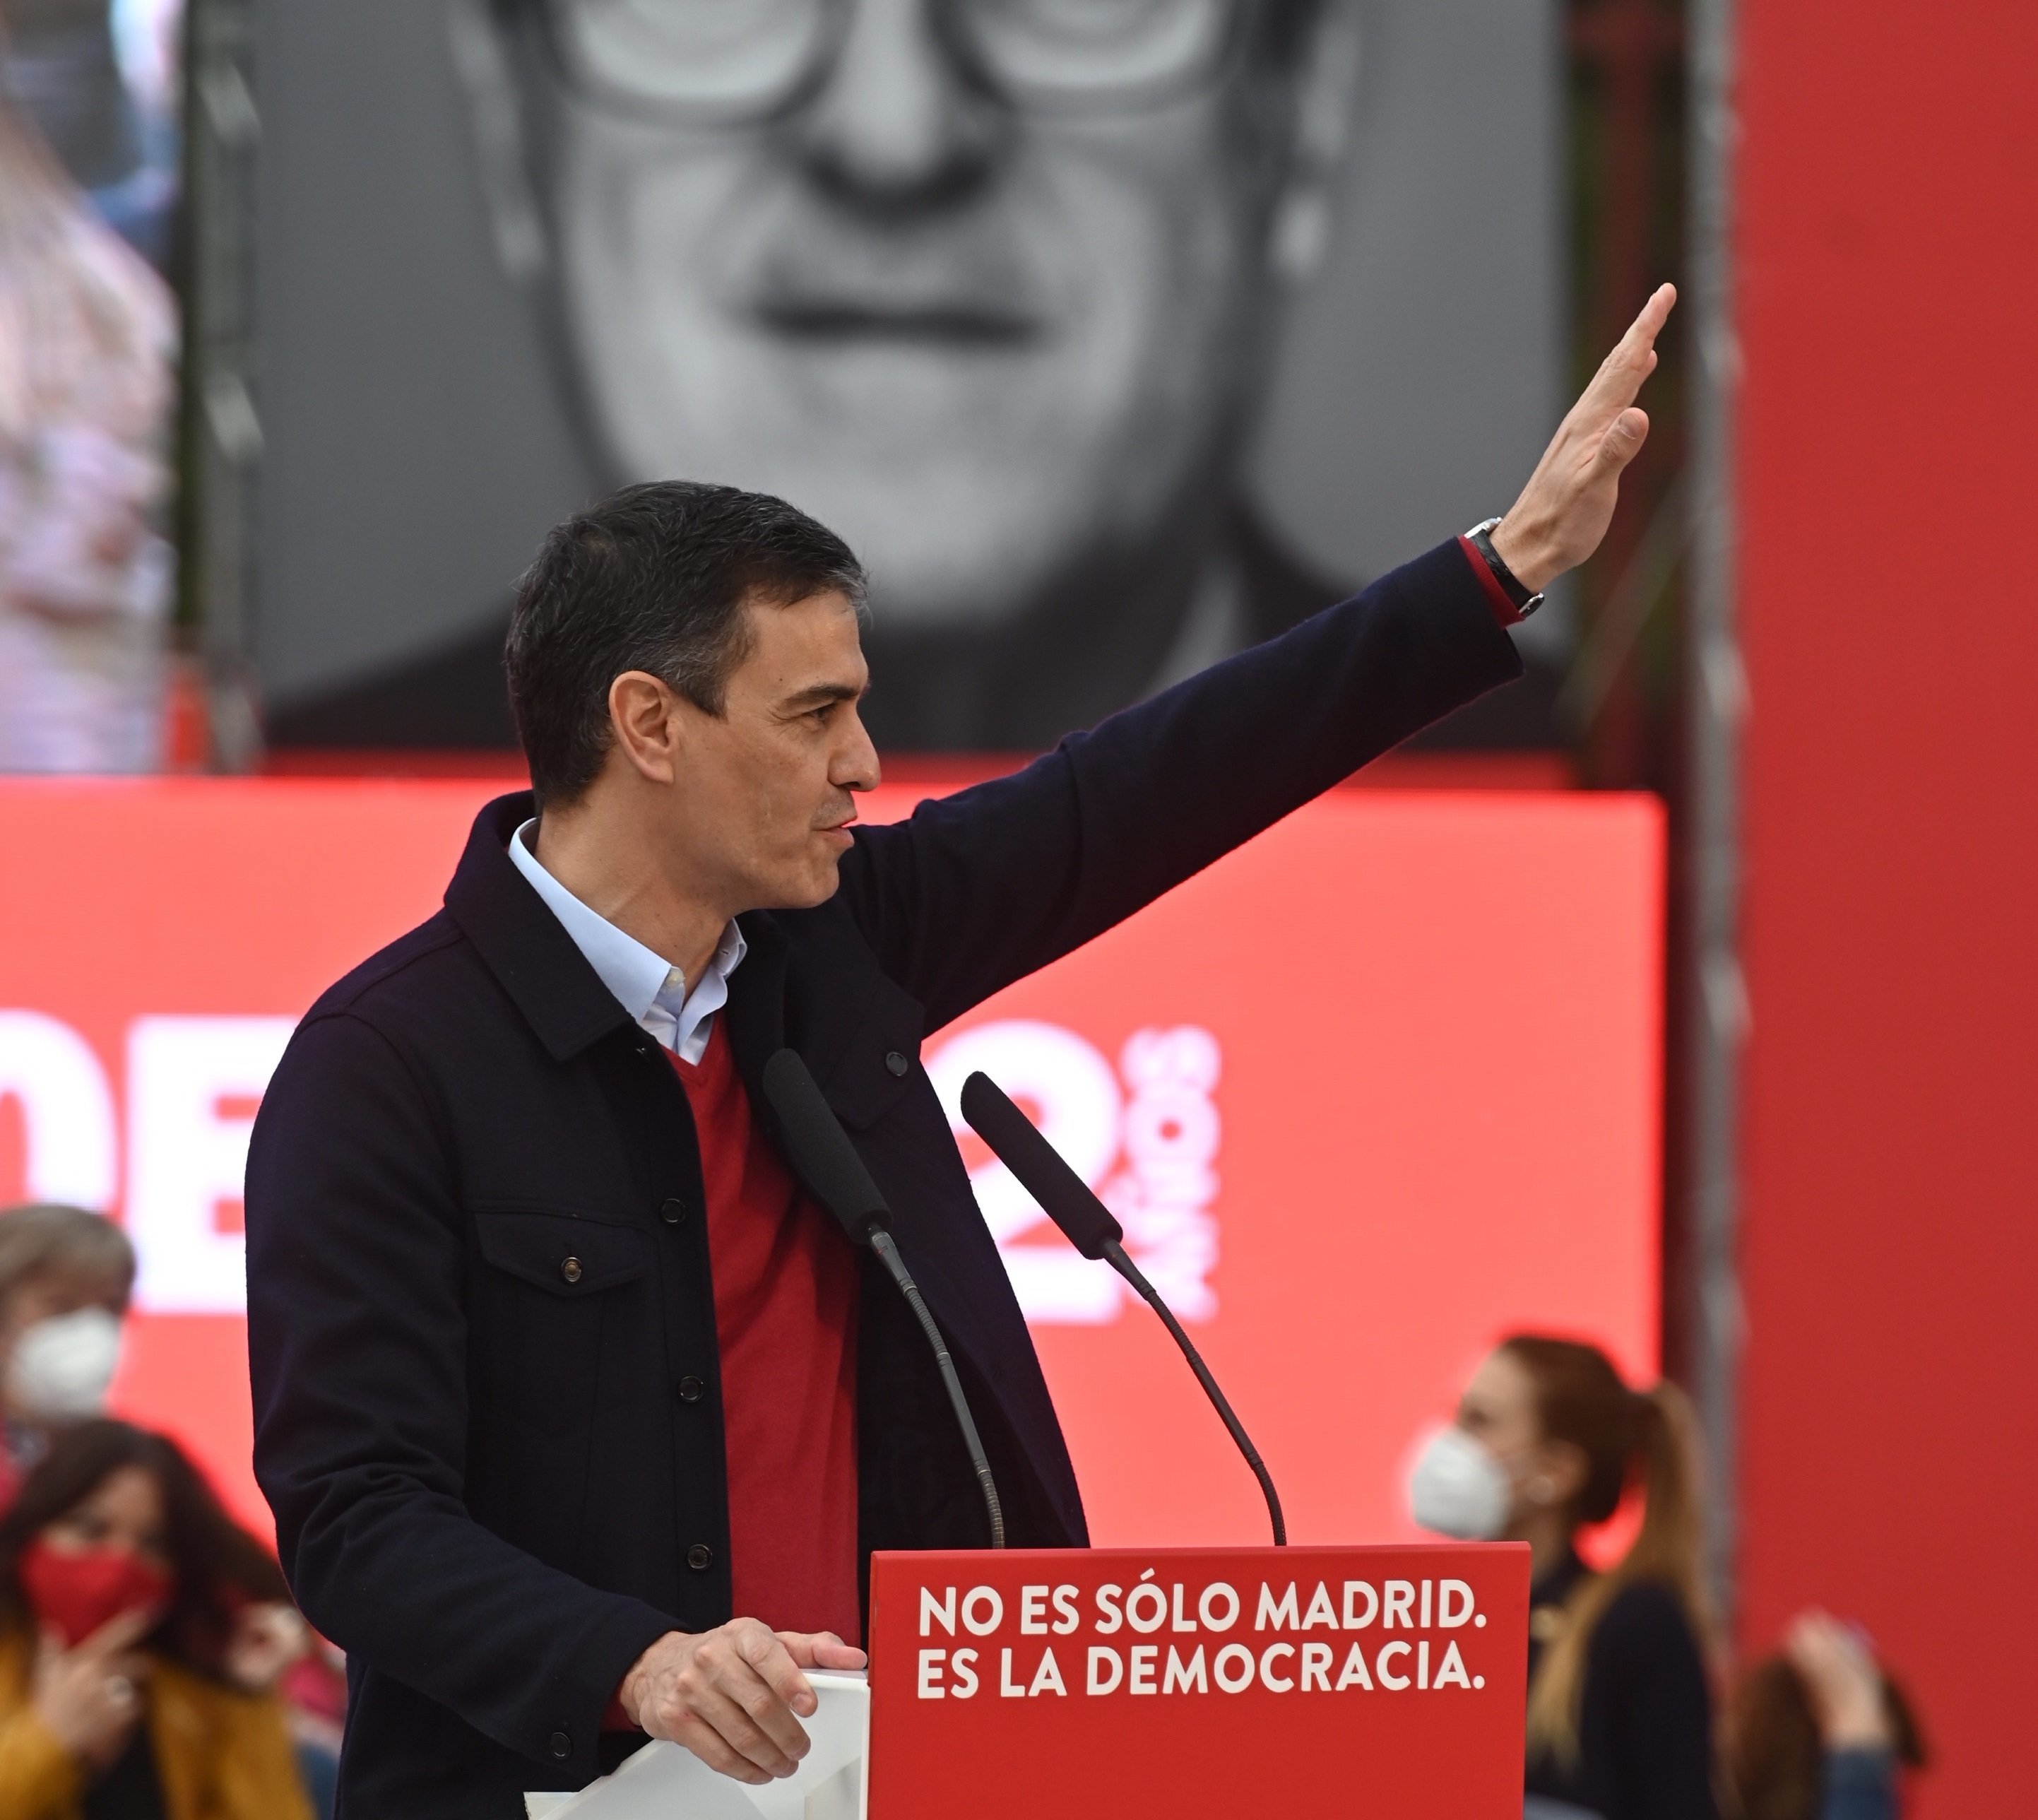 La nova reforma fiscal de Sánchez: Peatges a les autovies i més impostos